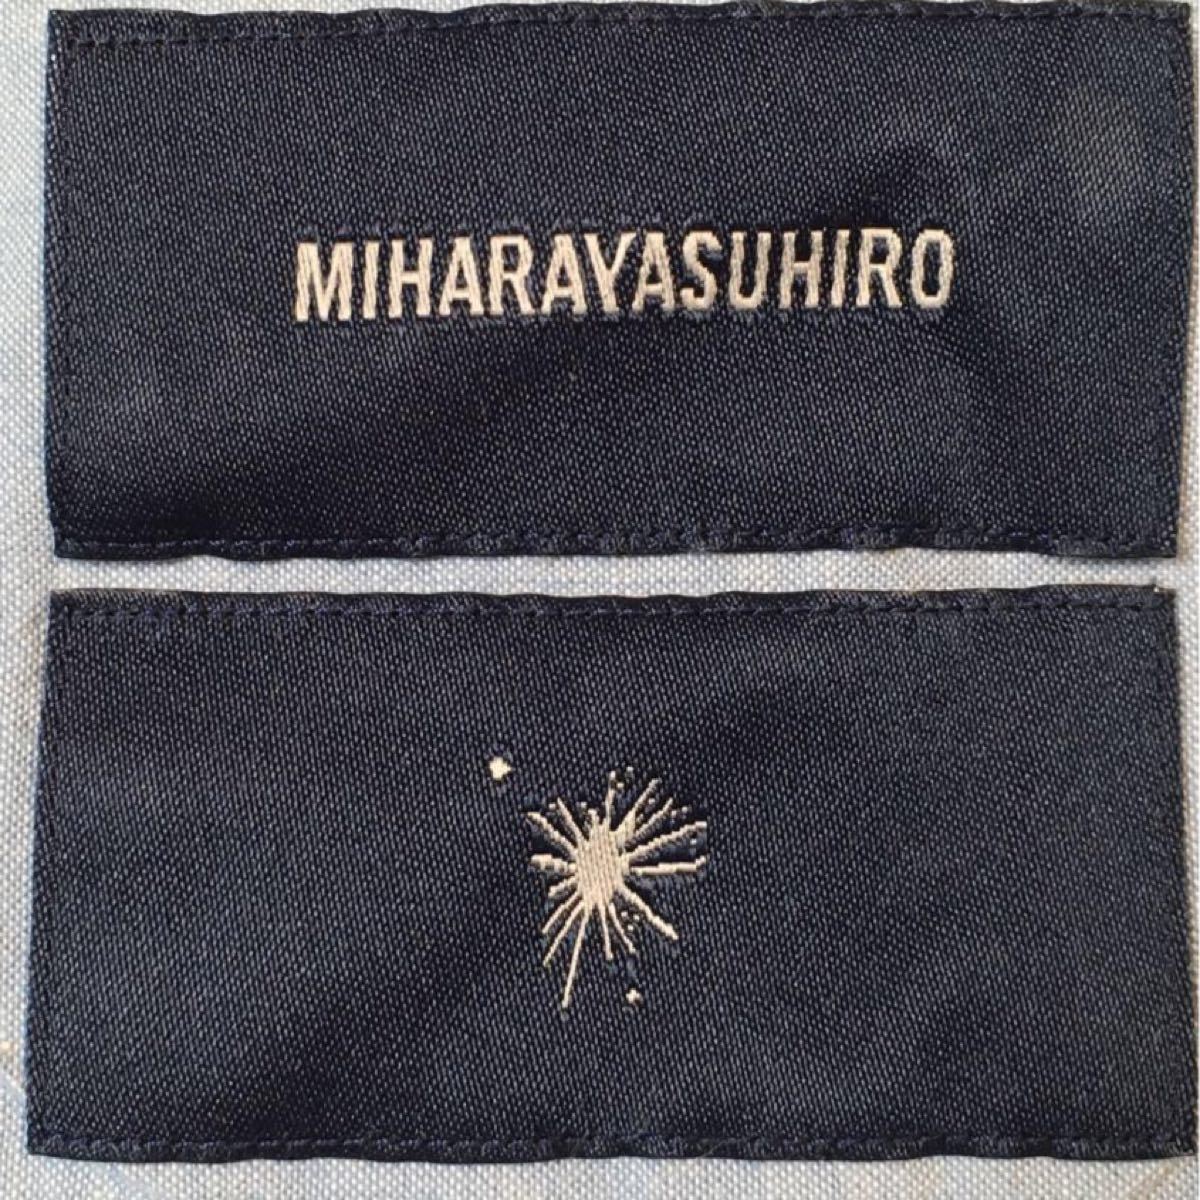 ミハラヤスヒロのシャツ